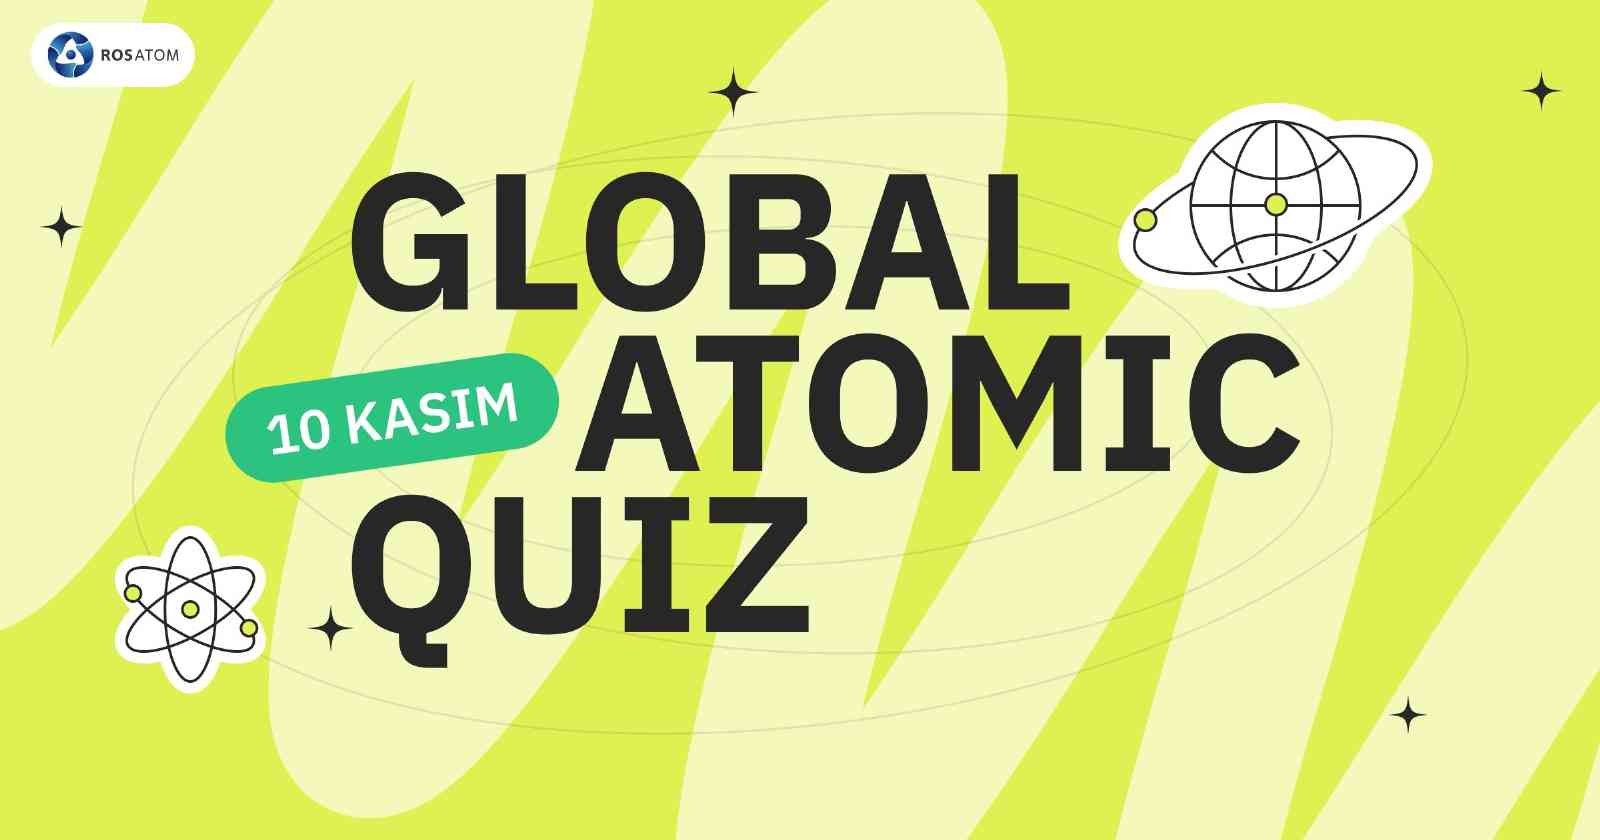 rosatomun global atomic quiz yarismasina turkiyeden buyuk ilgi 61594b1